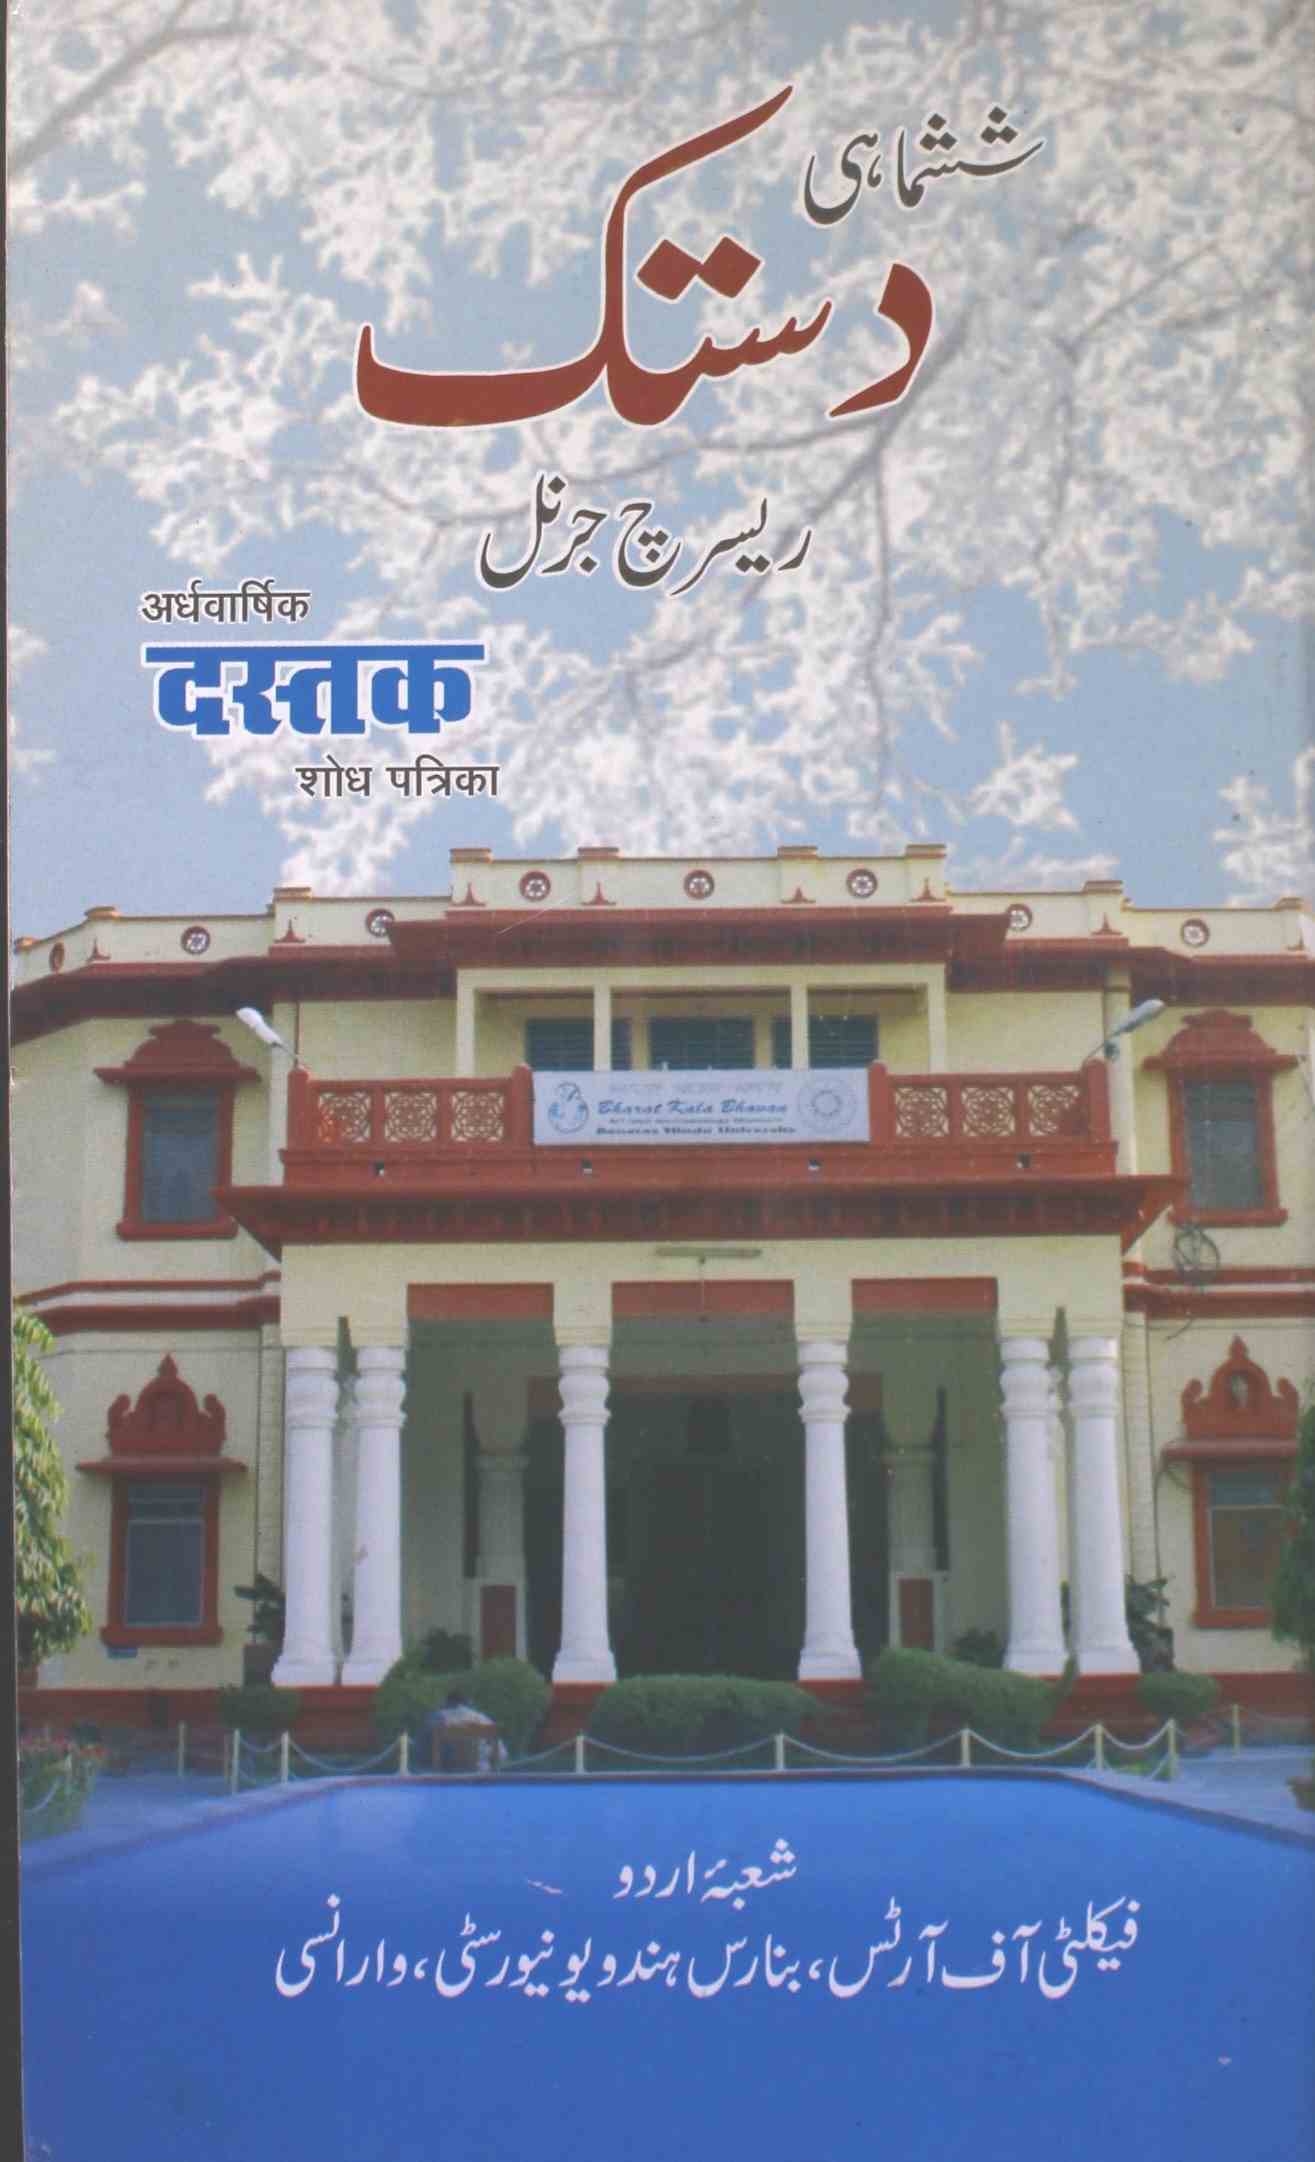 Shahmahi Dustak Jid1 2018